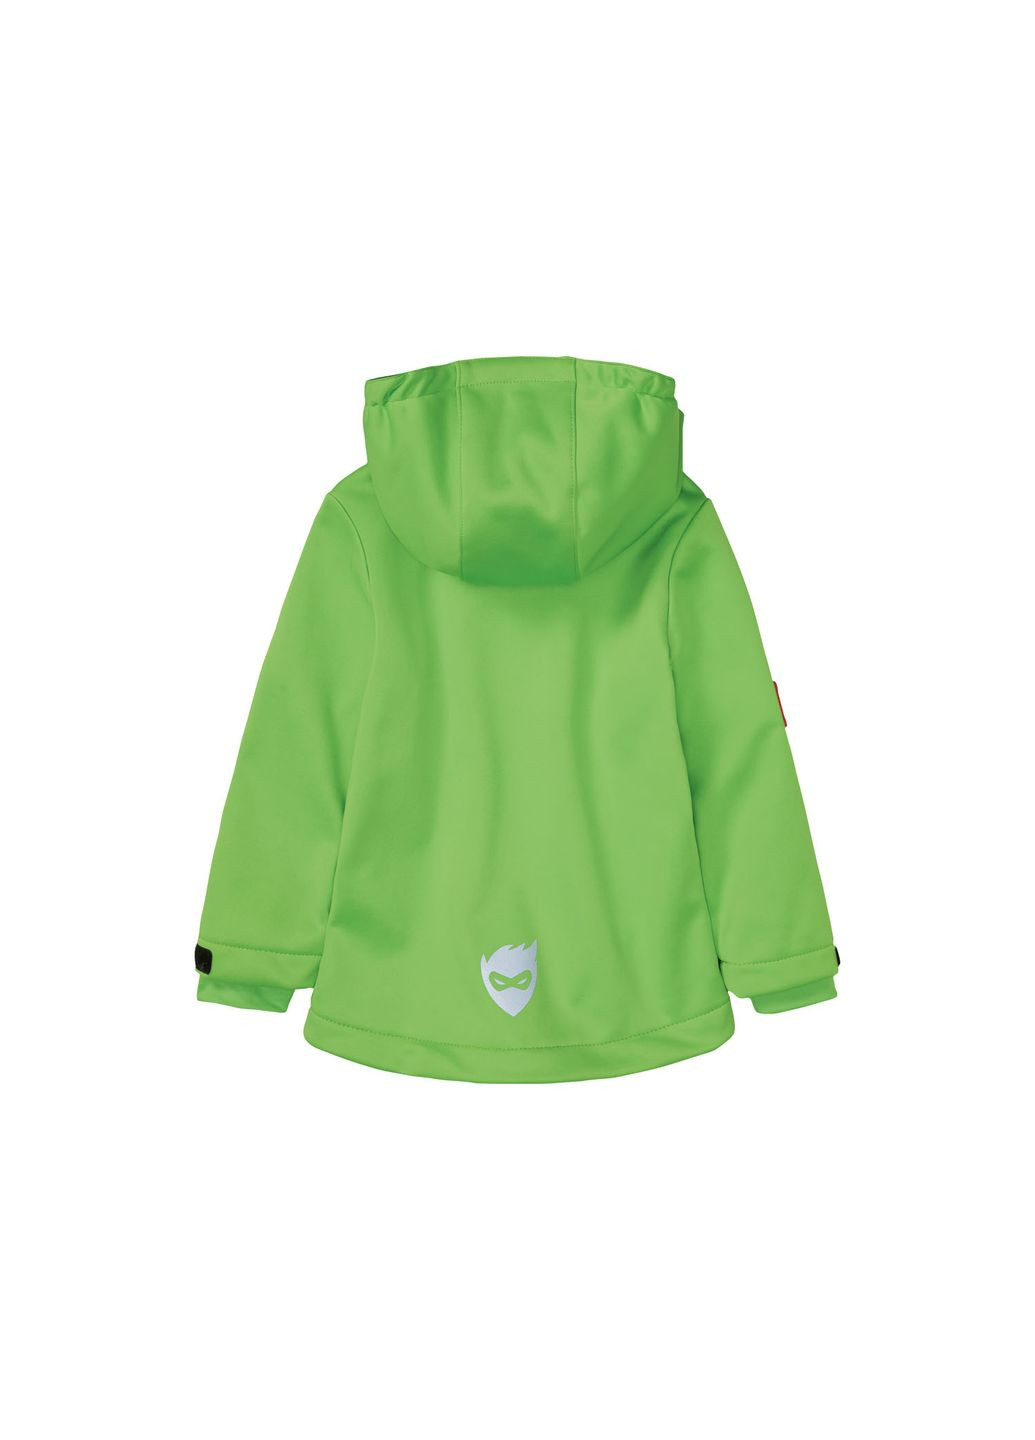 Салатова демісезонна куртка softshell водовідштовхувальна та вітрозахисна для хлопчика dope dyed 375430 салатовий Lupilu